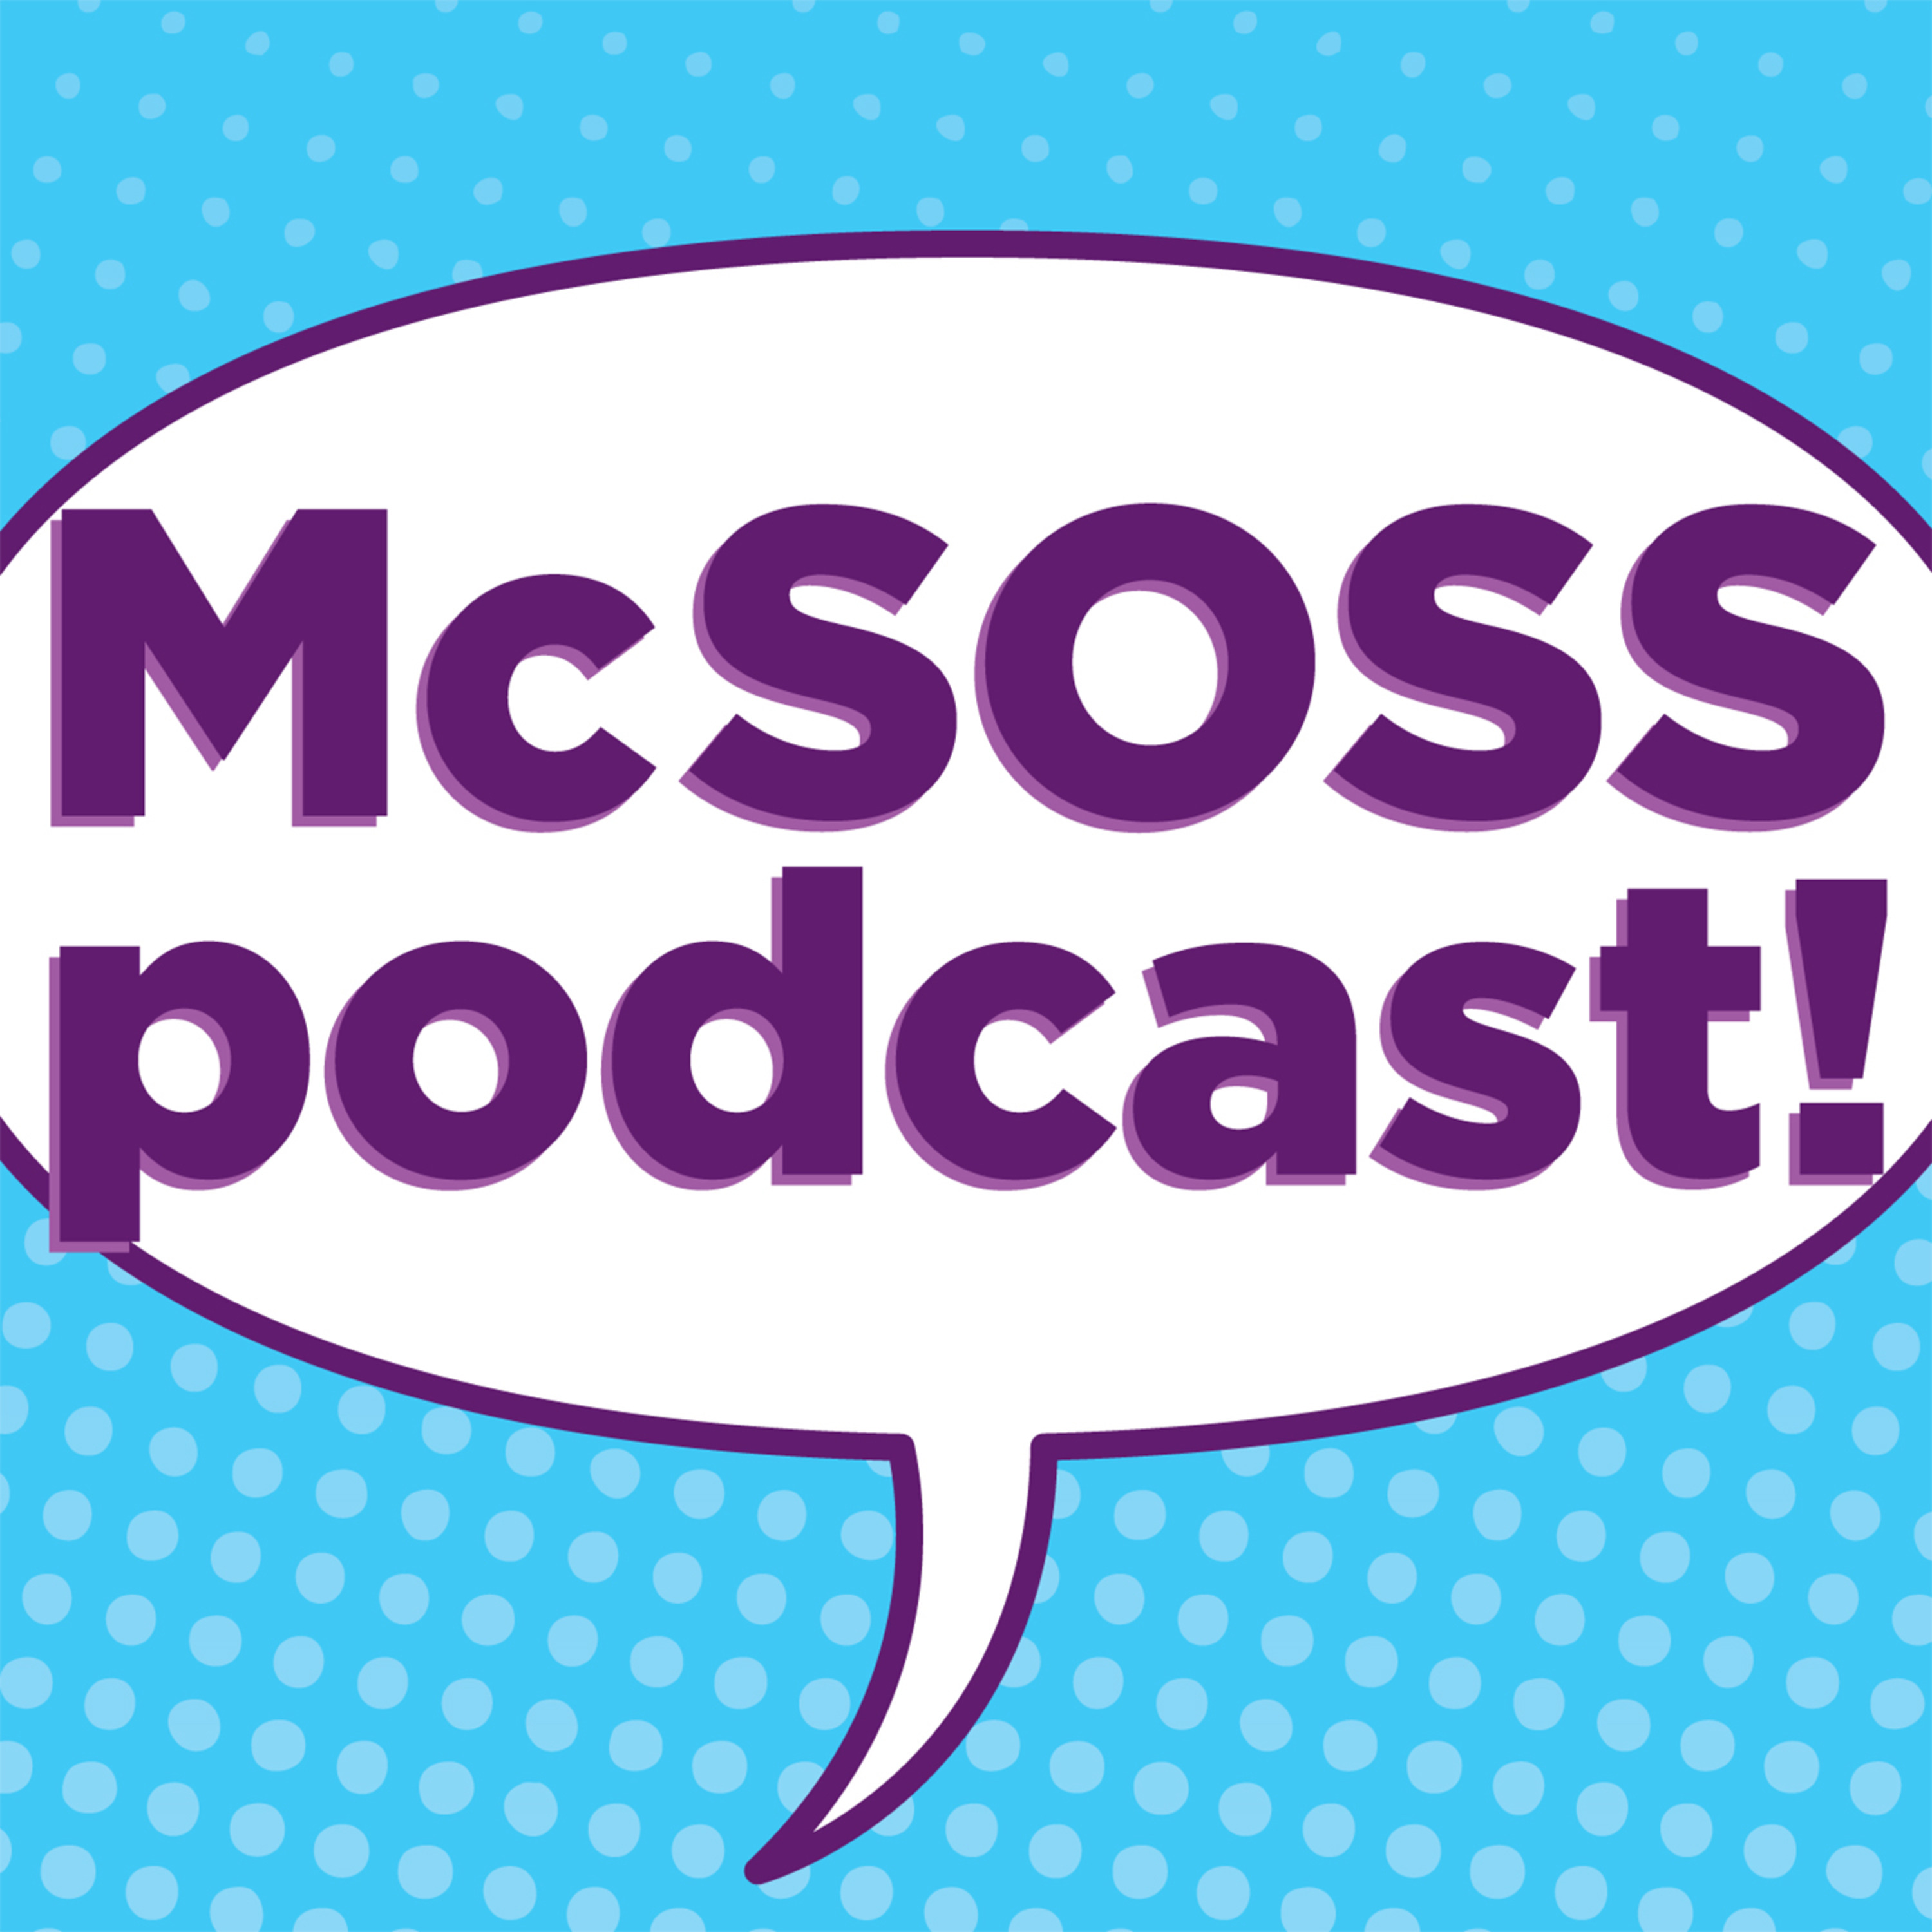 McSoss Podcast